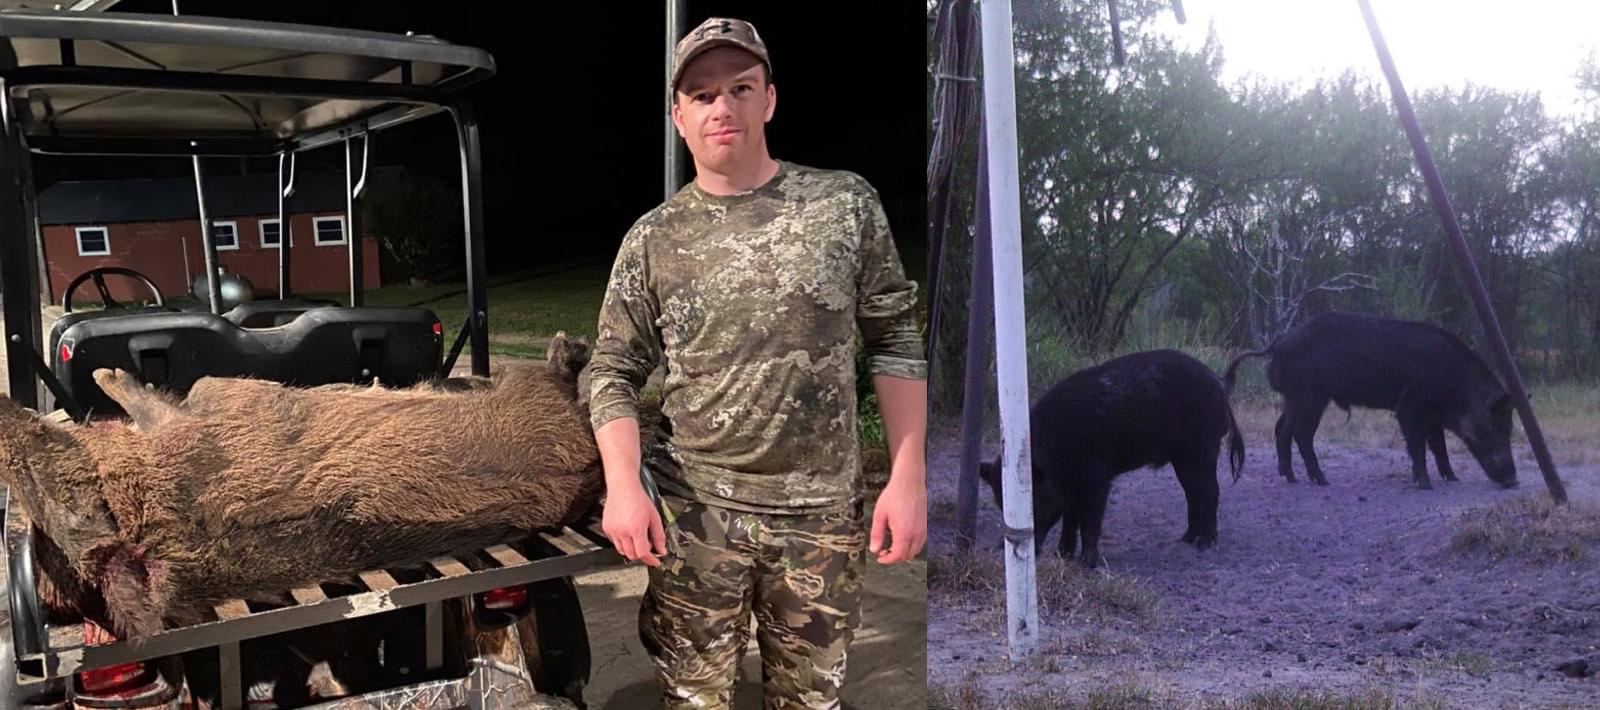 South Texas Free Range Hogs Hunting